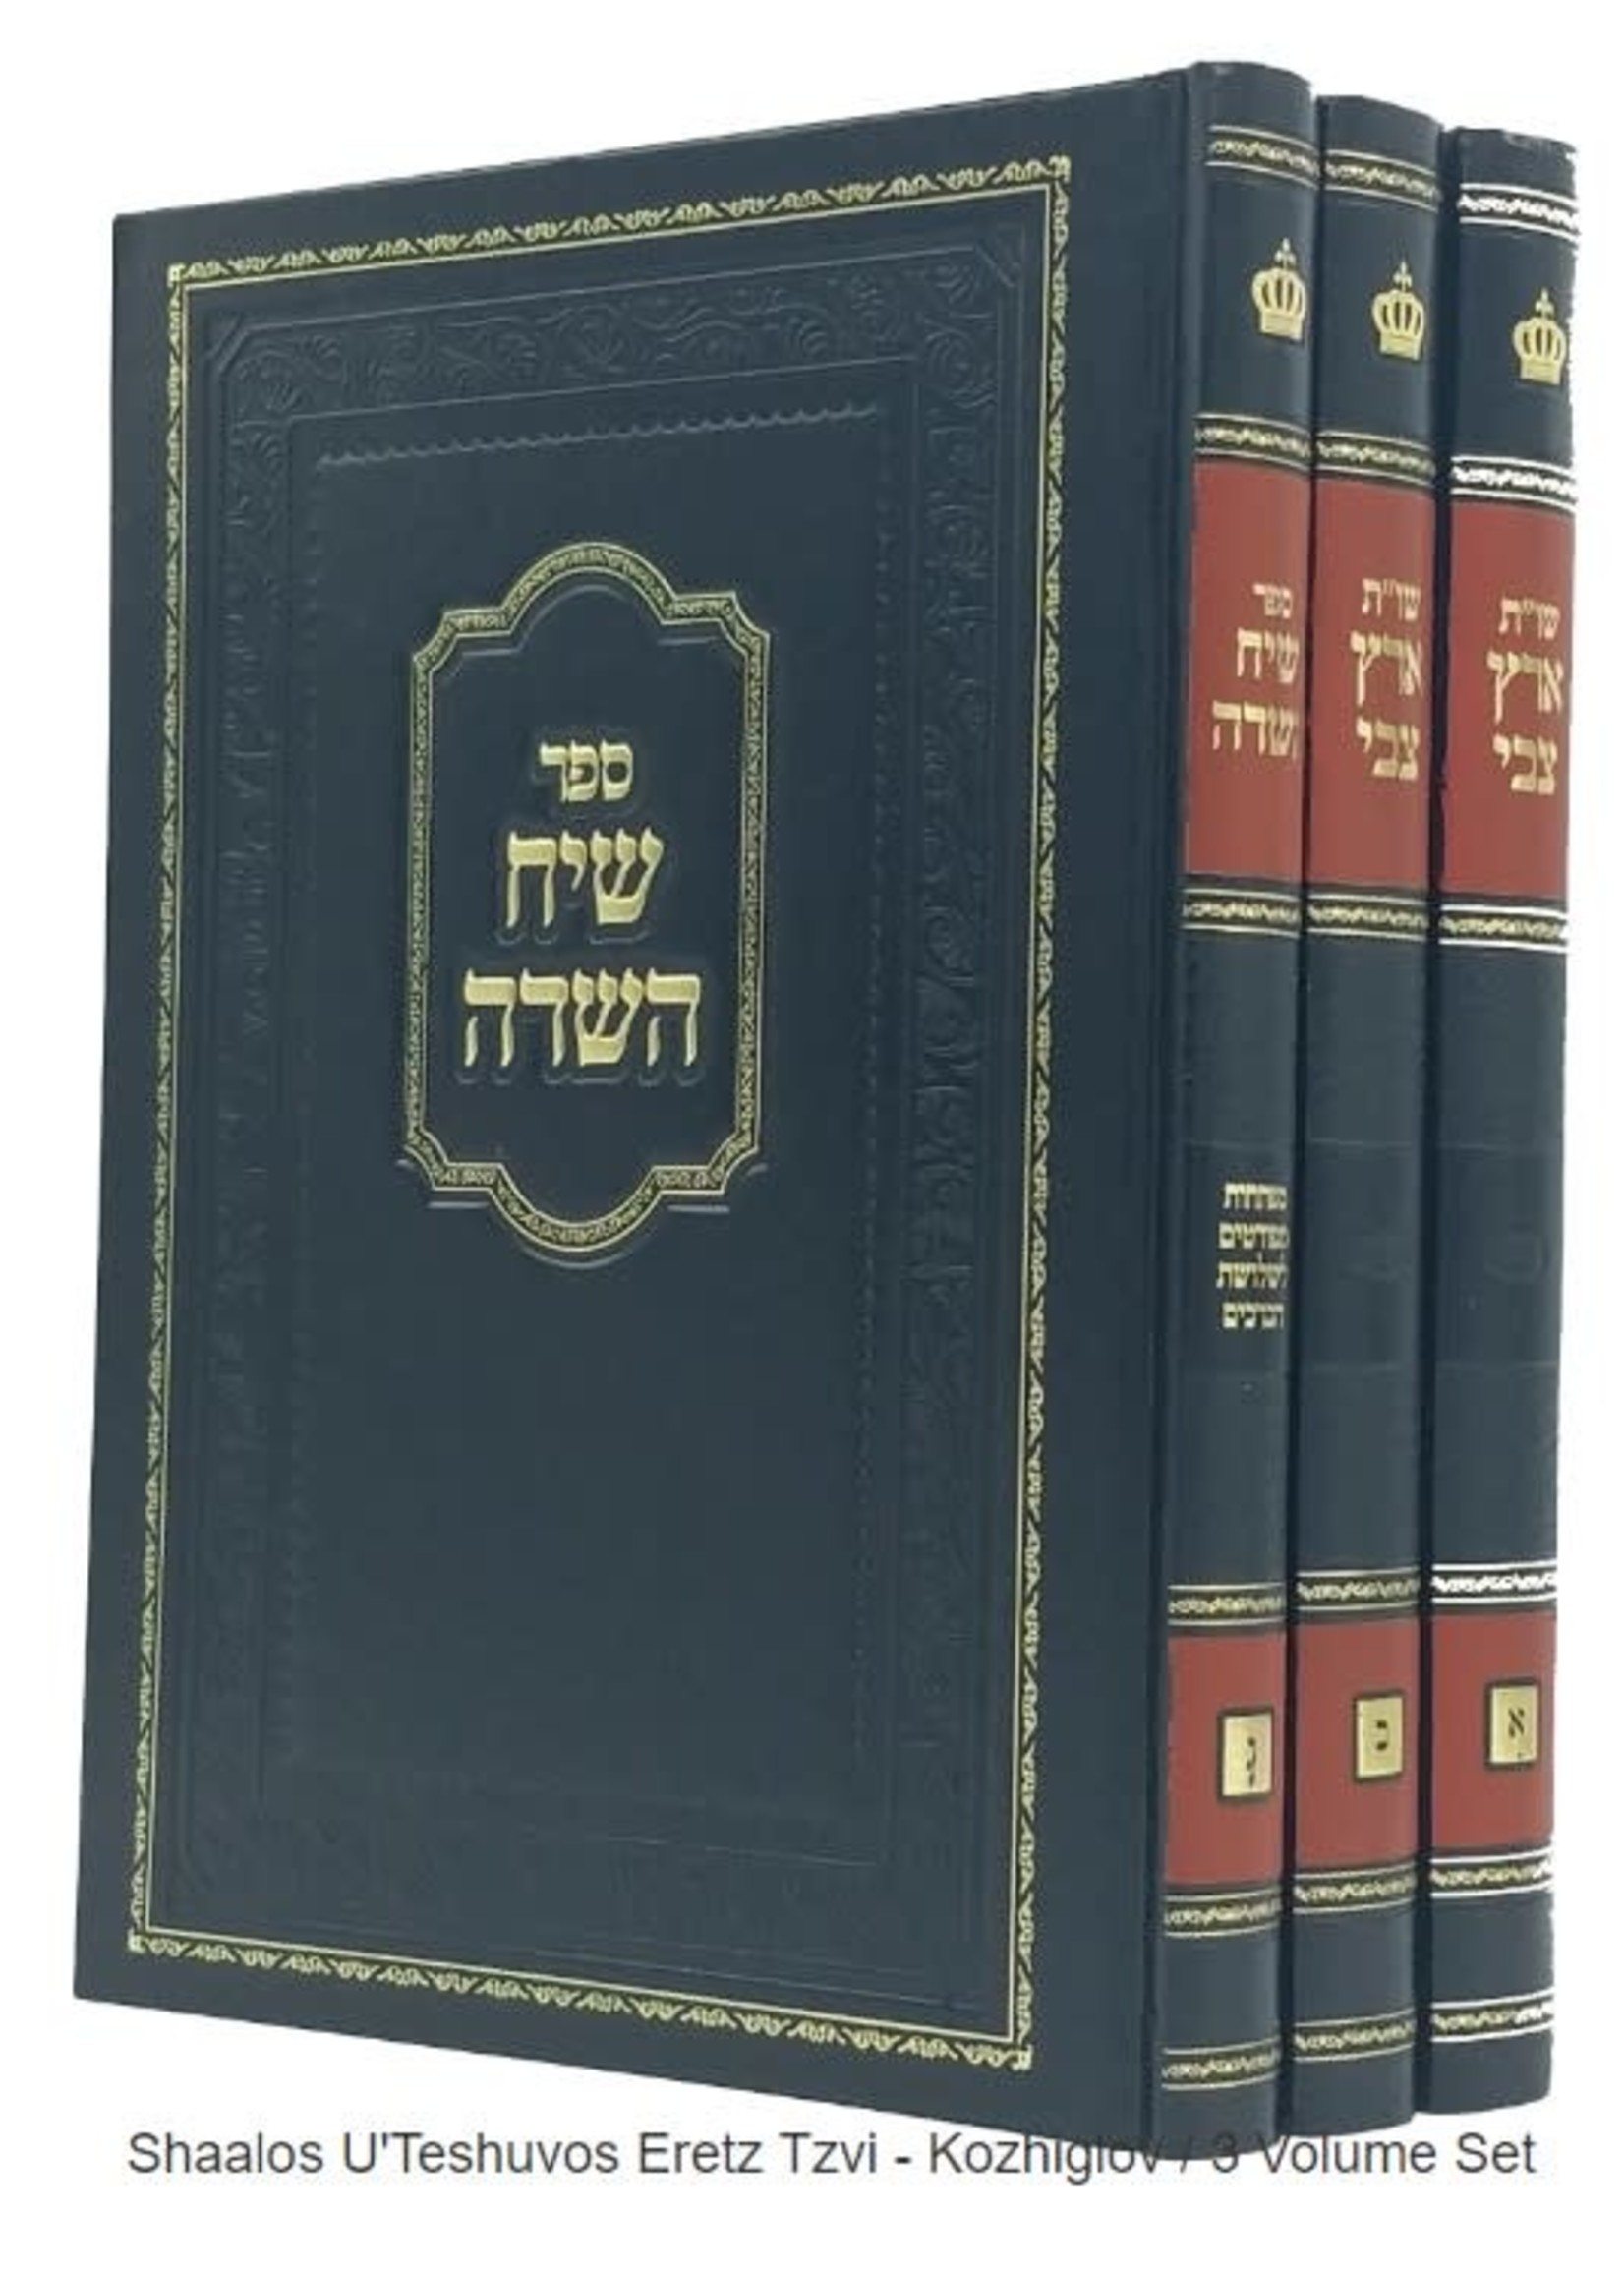 Rabbi Aryeh Tzvi Frommer Shaalos Uteshuvos Eretz Tzvi (3 Vol.) /  שאלות ותשובות ארץ צבי ג כרכים